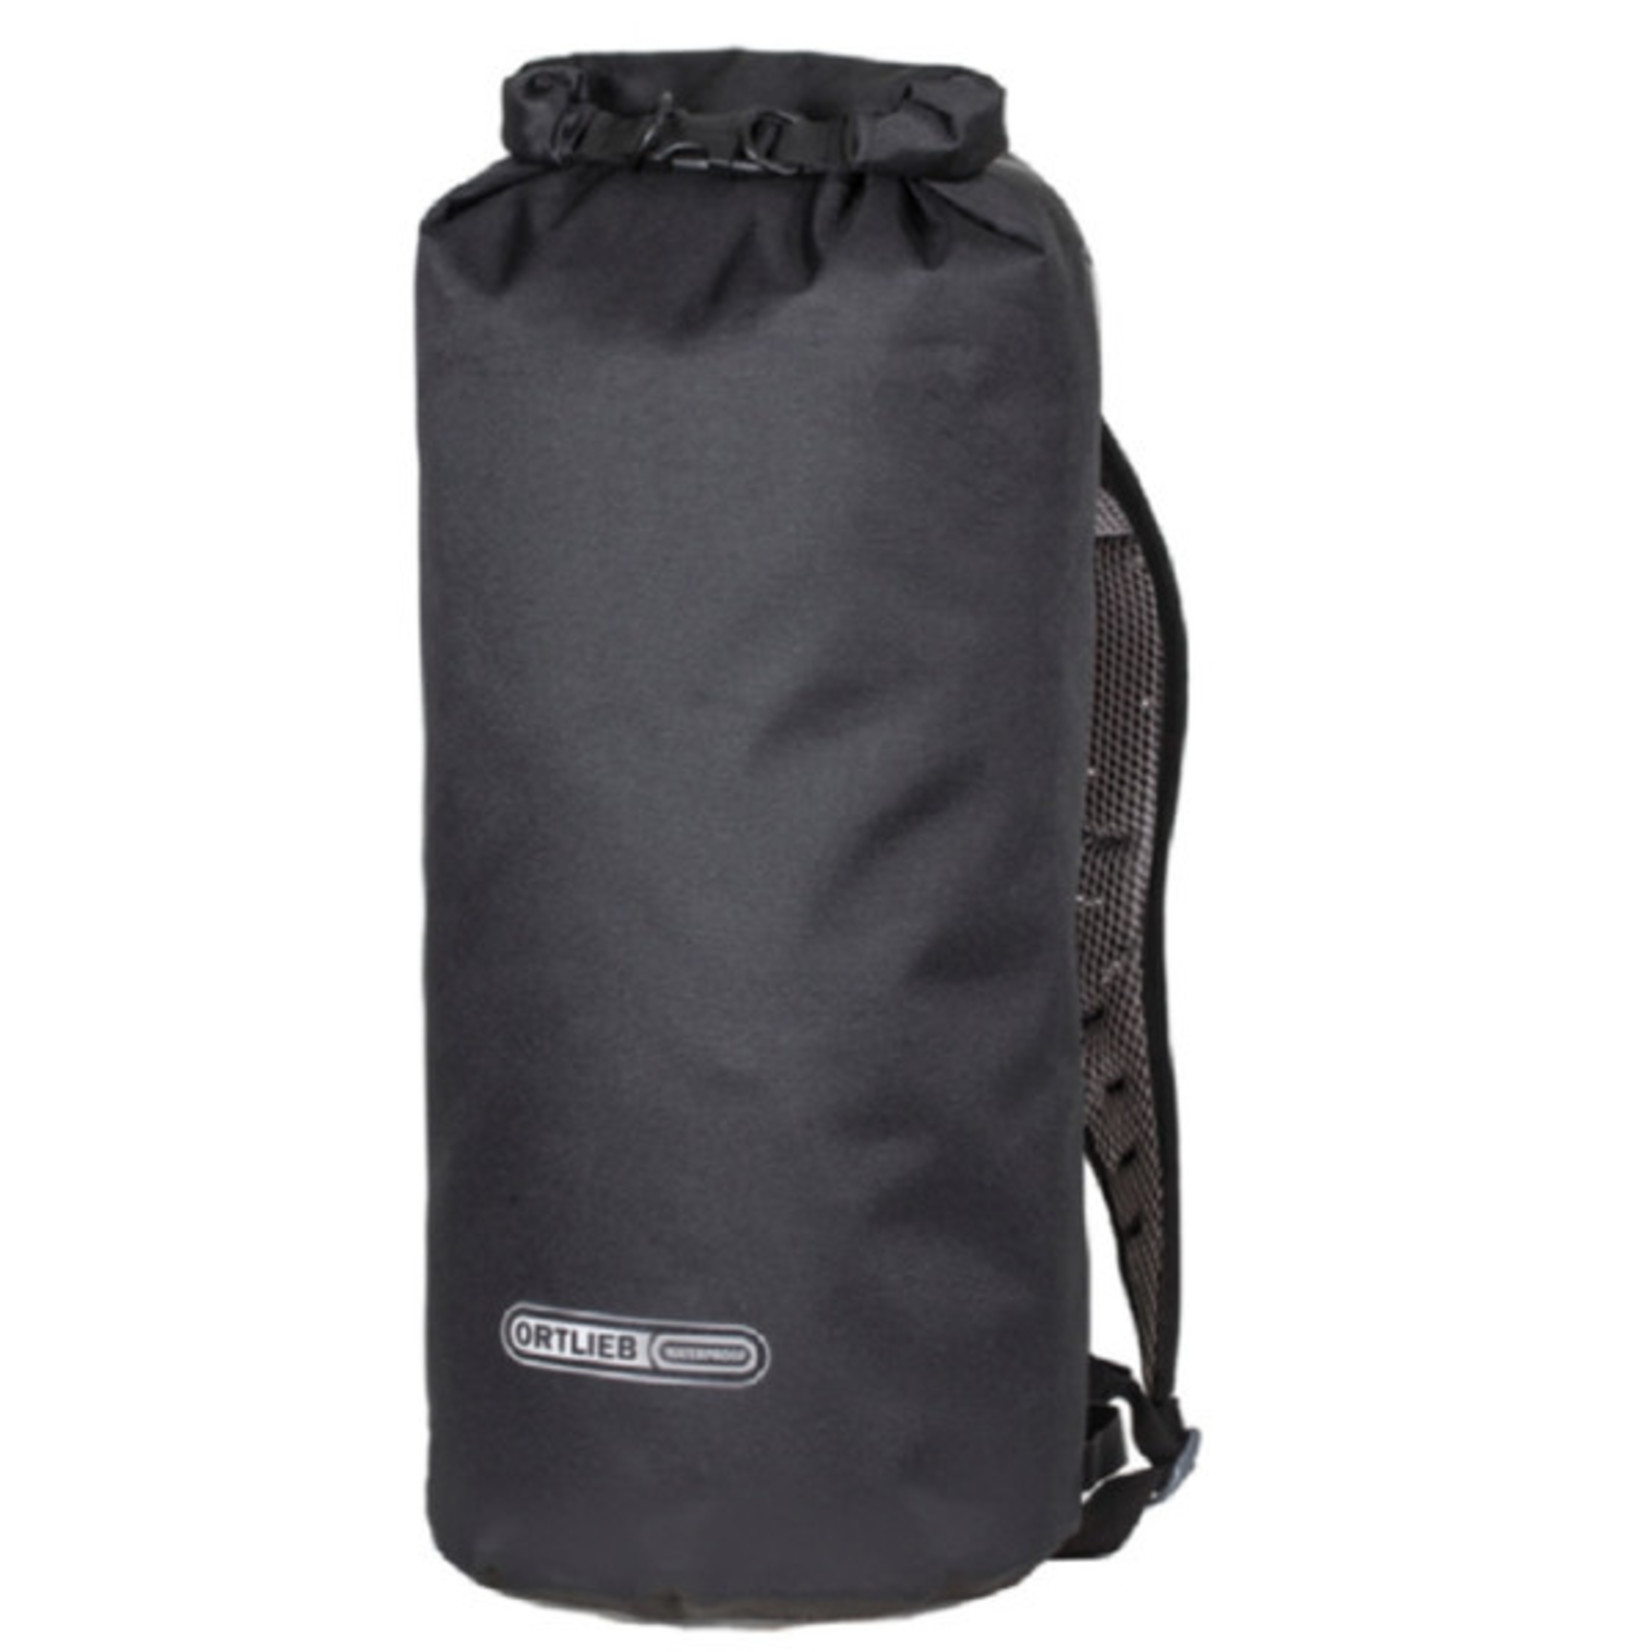 Ortlieb New Ortlieb X-Plorer Stuff Sack Bag R17254 Large - 7.9Inch/20cm - 59L - Black